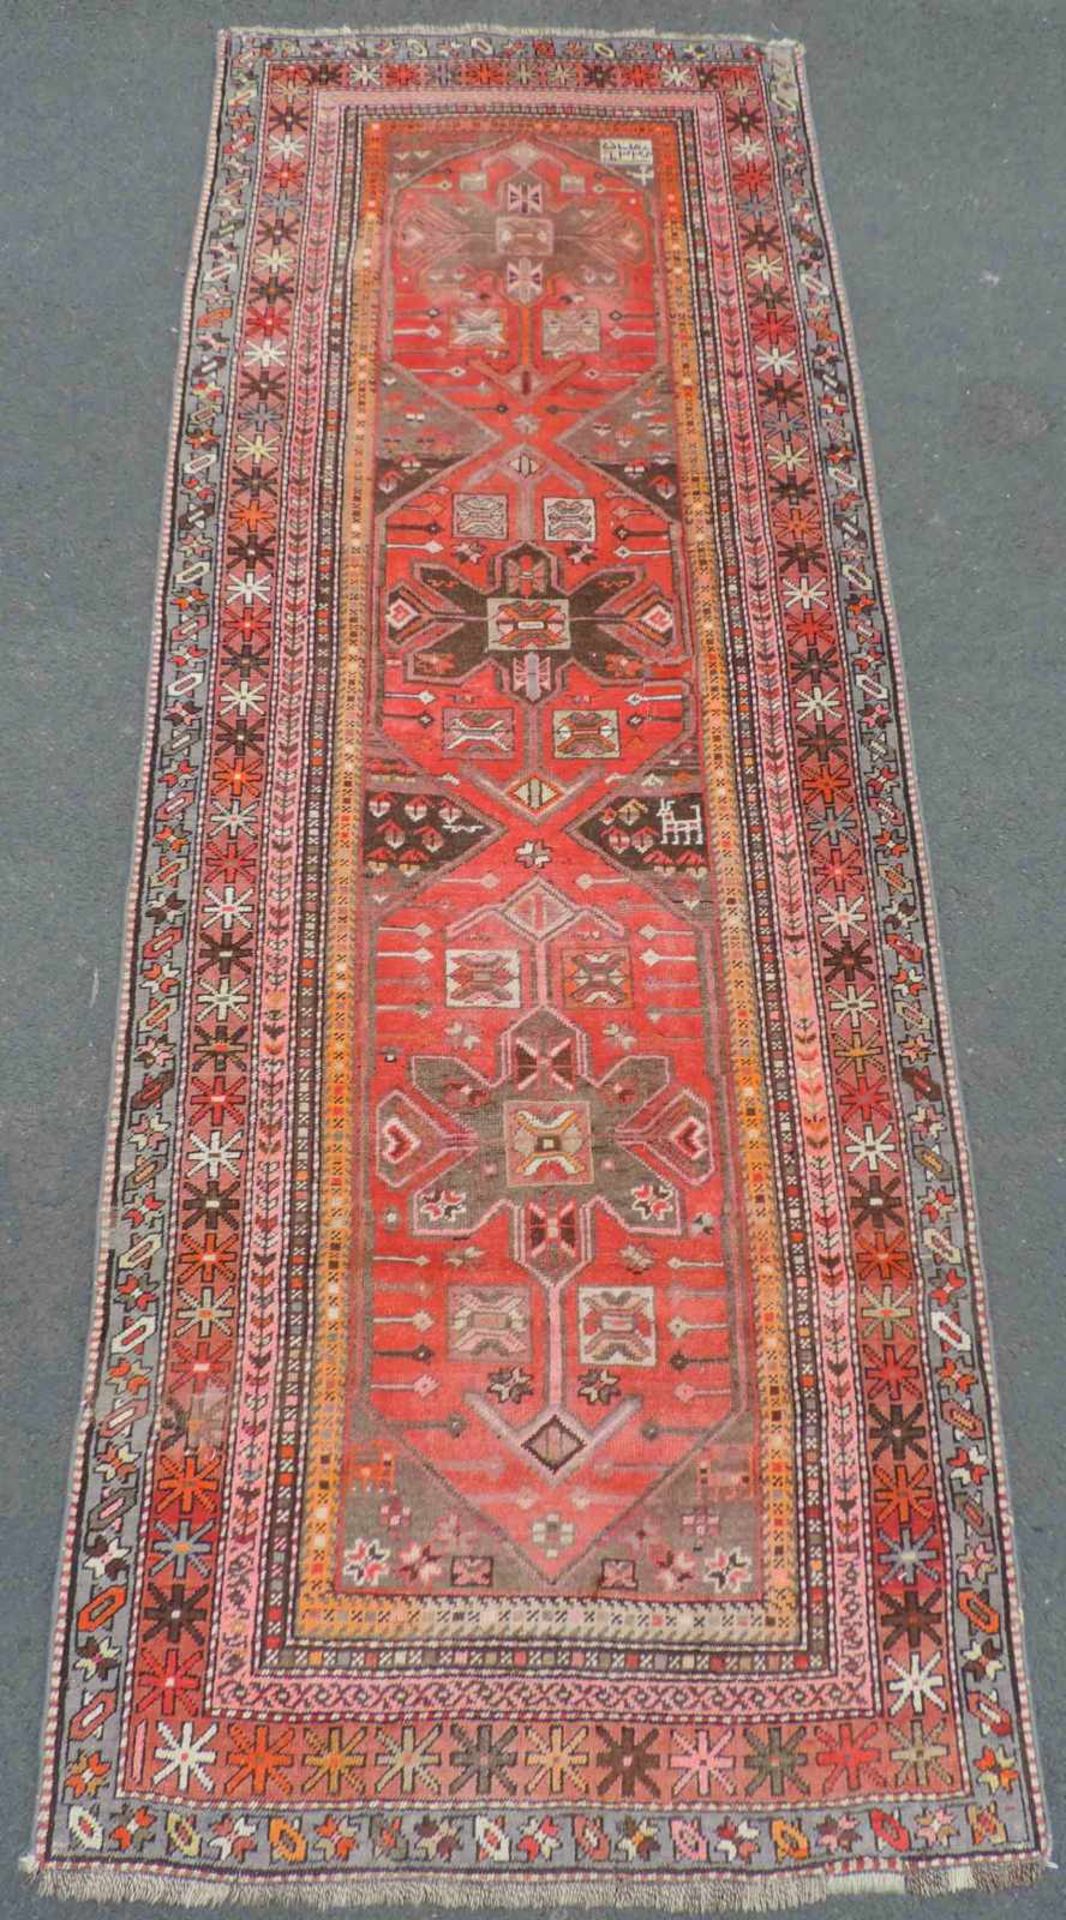 Karabagh Kaukasus Dorfteppich, alt, datiert 1349 (1921). 275 cm x 105 cm. Handgeknüpft. Wolle auf